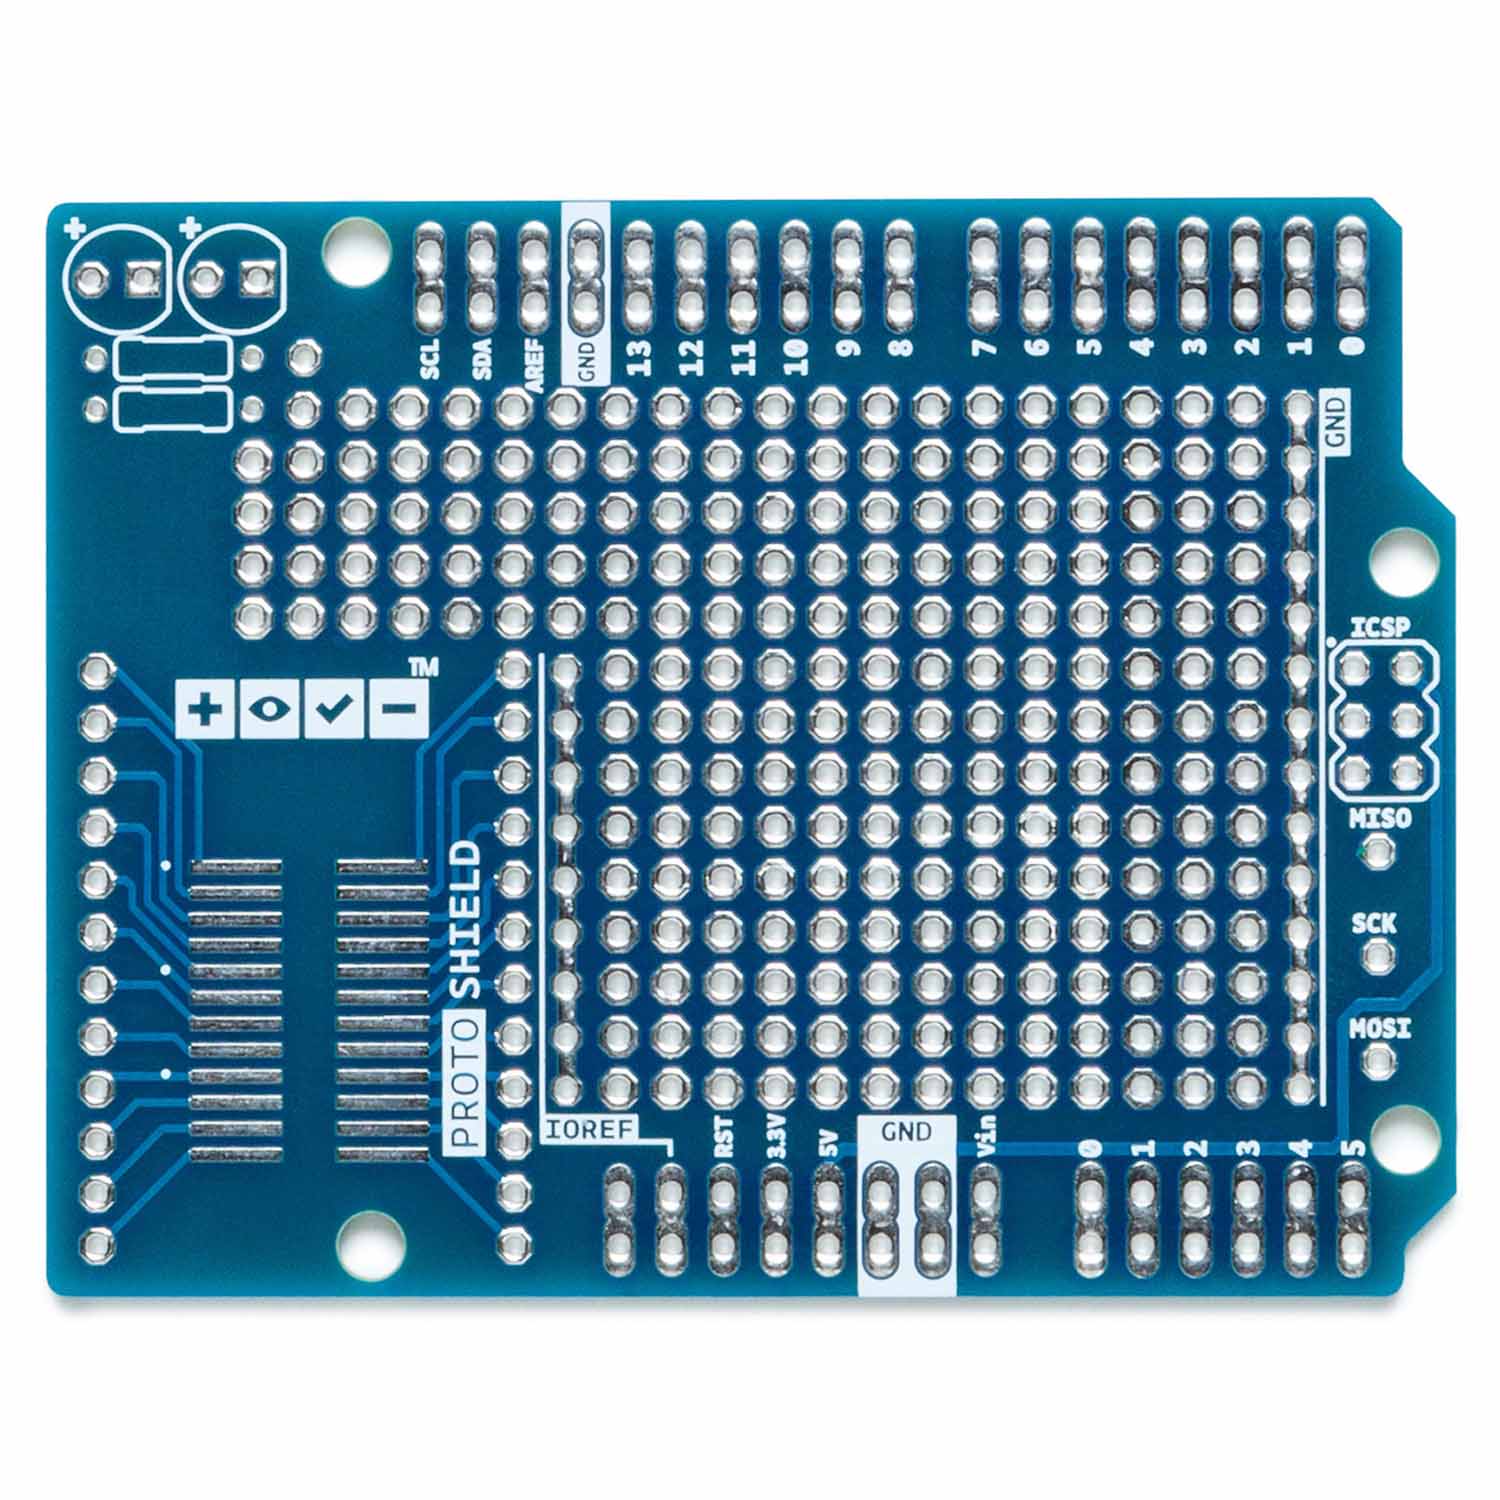 Arduino Proto Shield Rev3 (Uno Size) - The Pi Hut